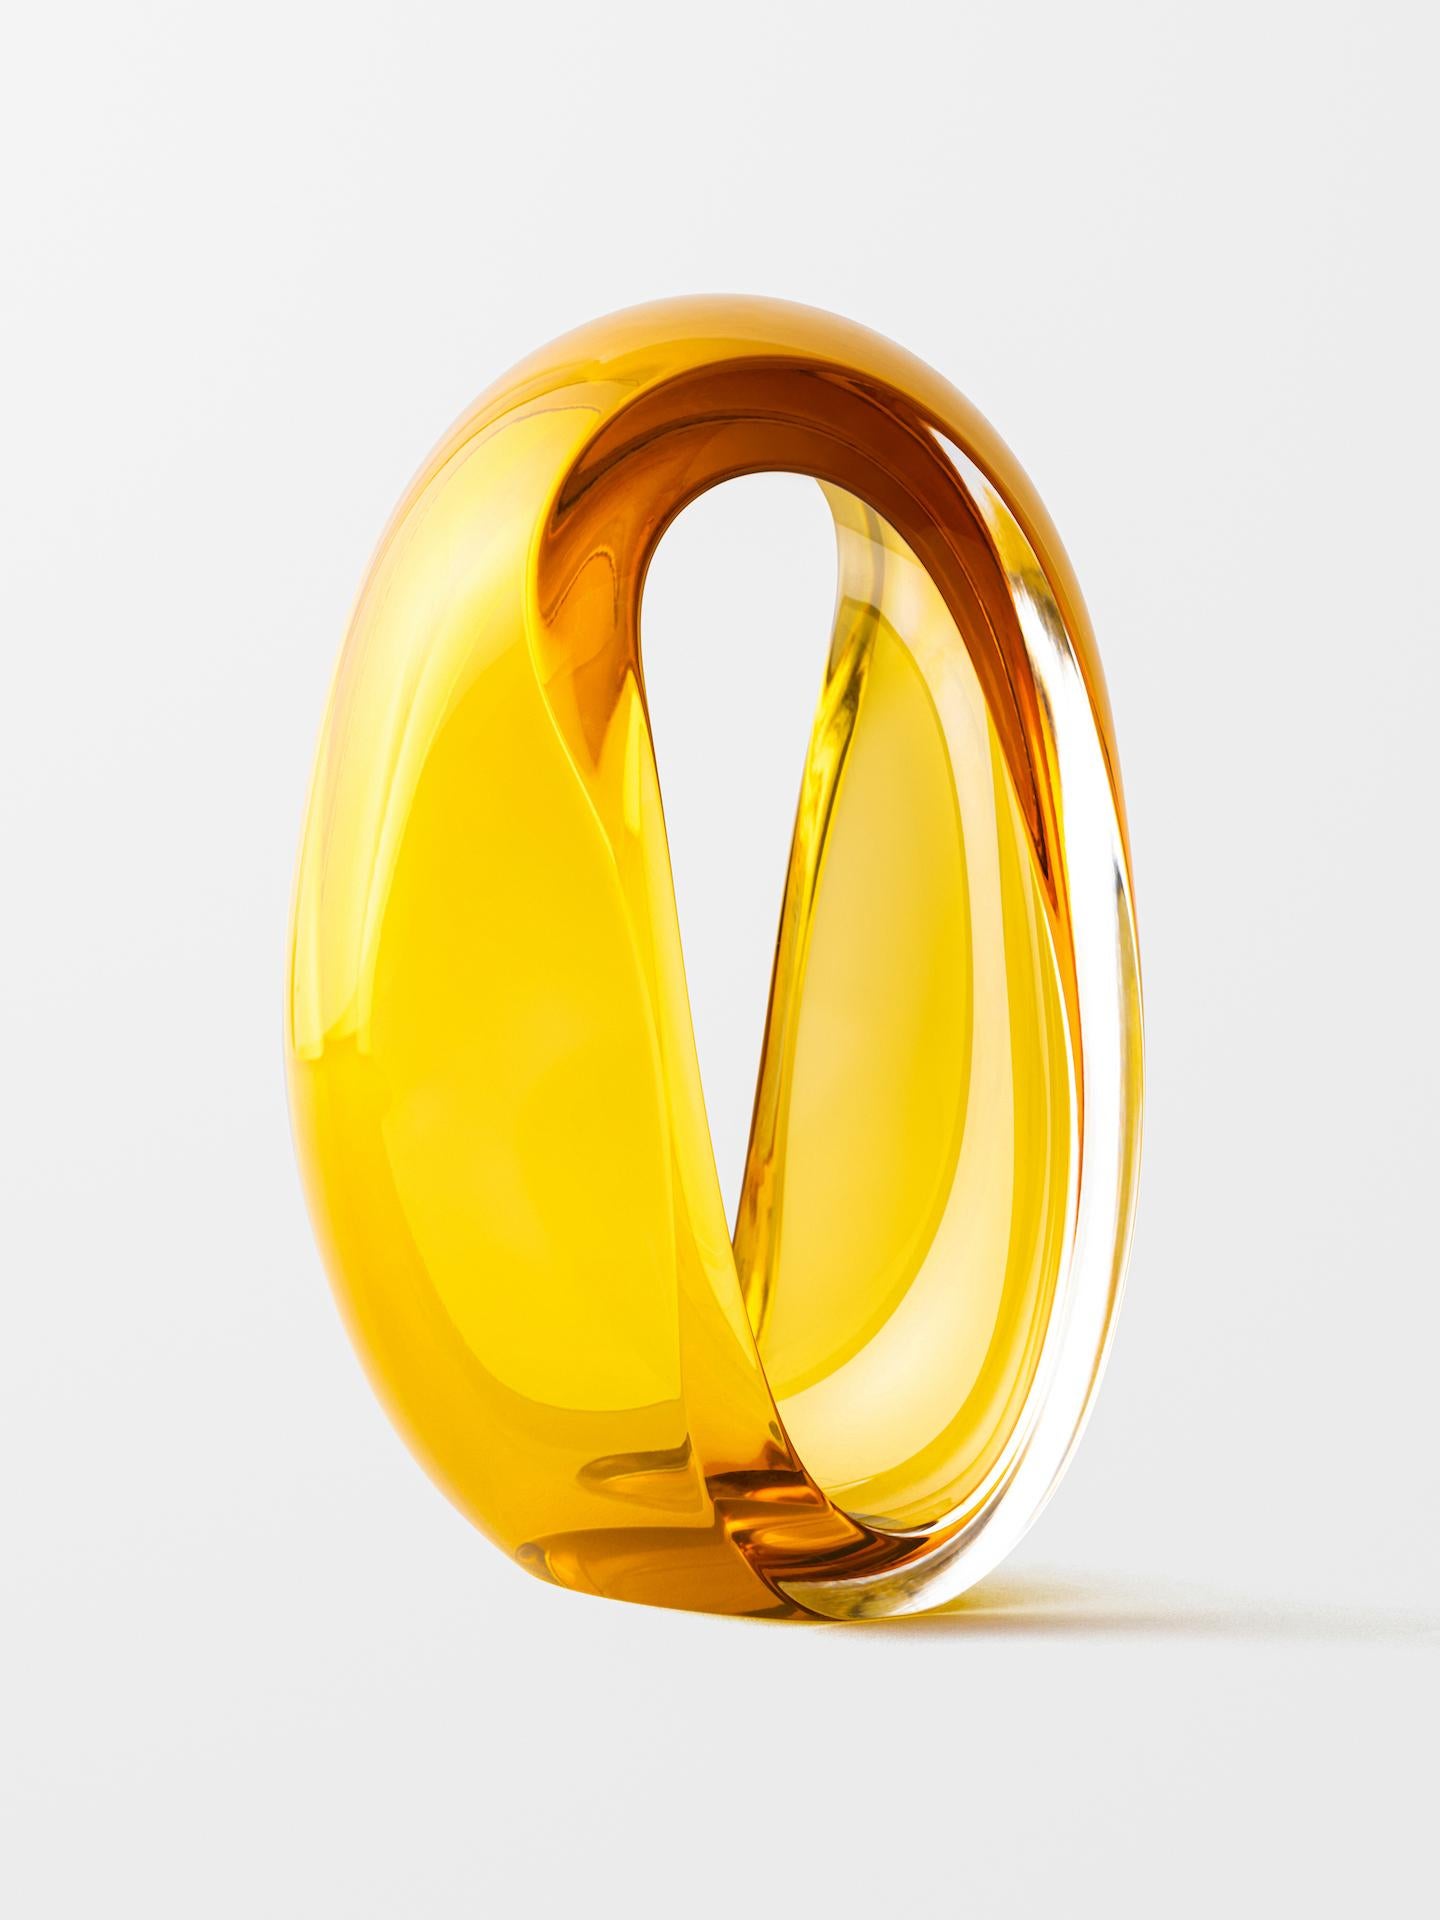 Loops (Gold) - Sculpture by Jonas Noël Niedermann